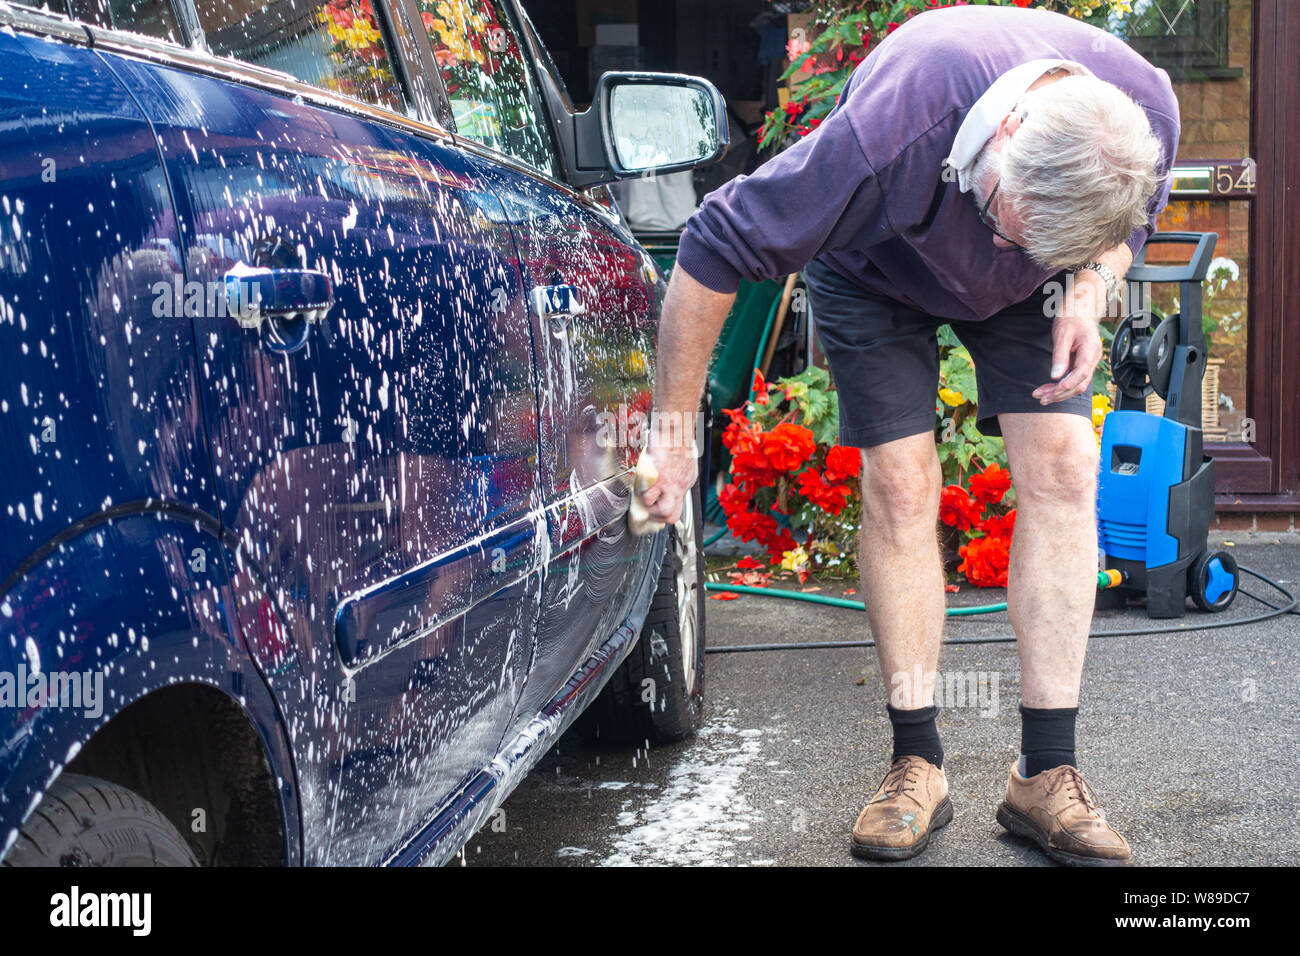 Lavage des mains d'un homme d'une voiture avec une éponge et de l'eau savonneuse. Banque D'Images